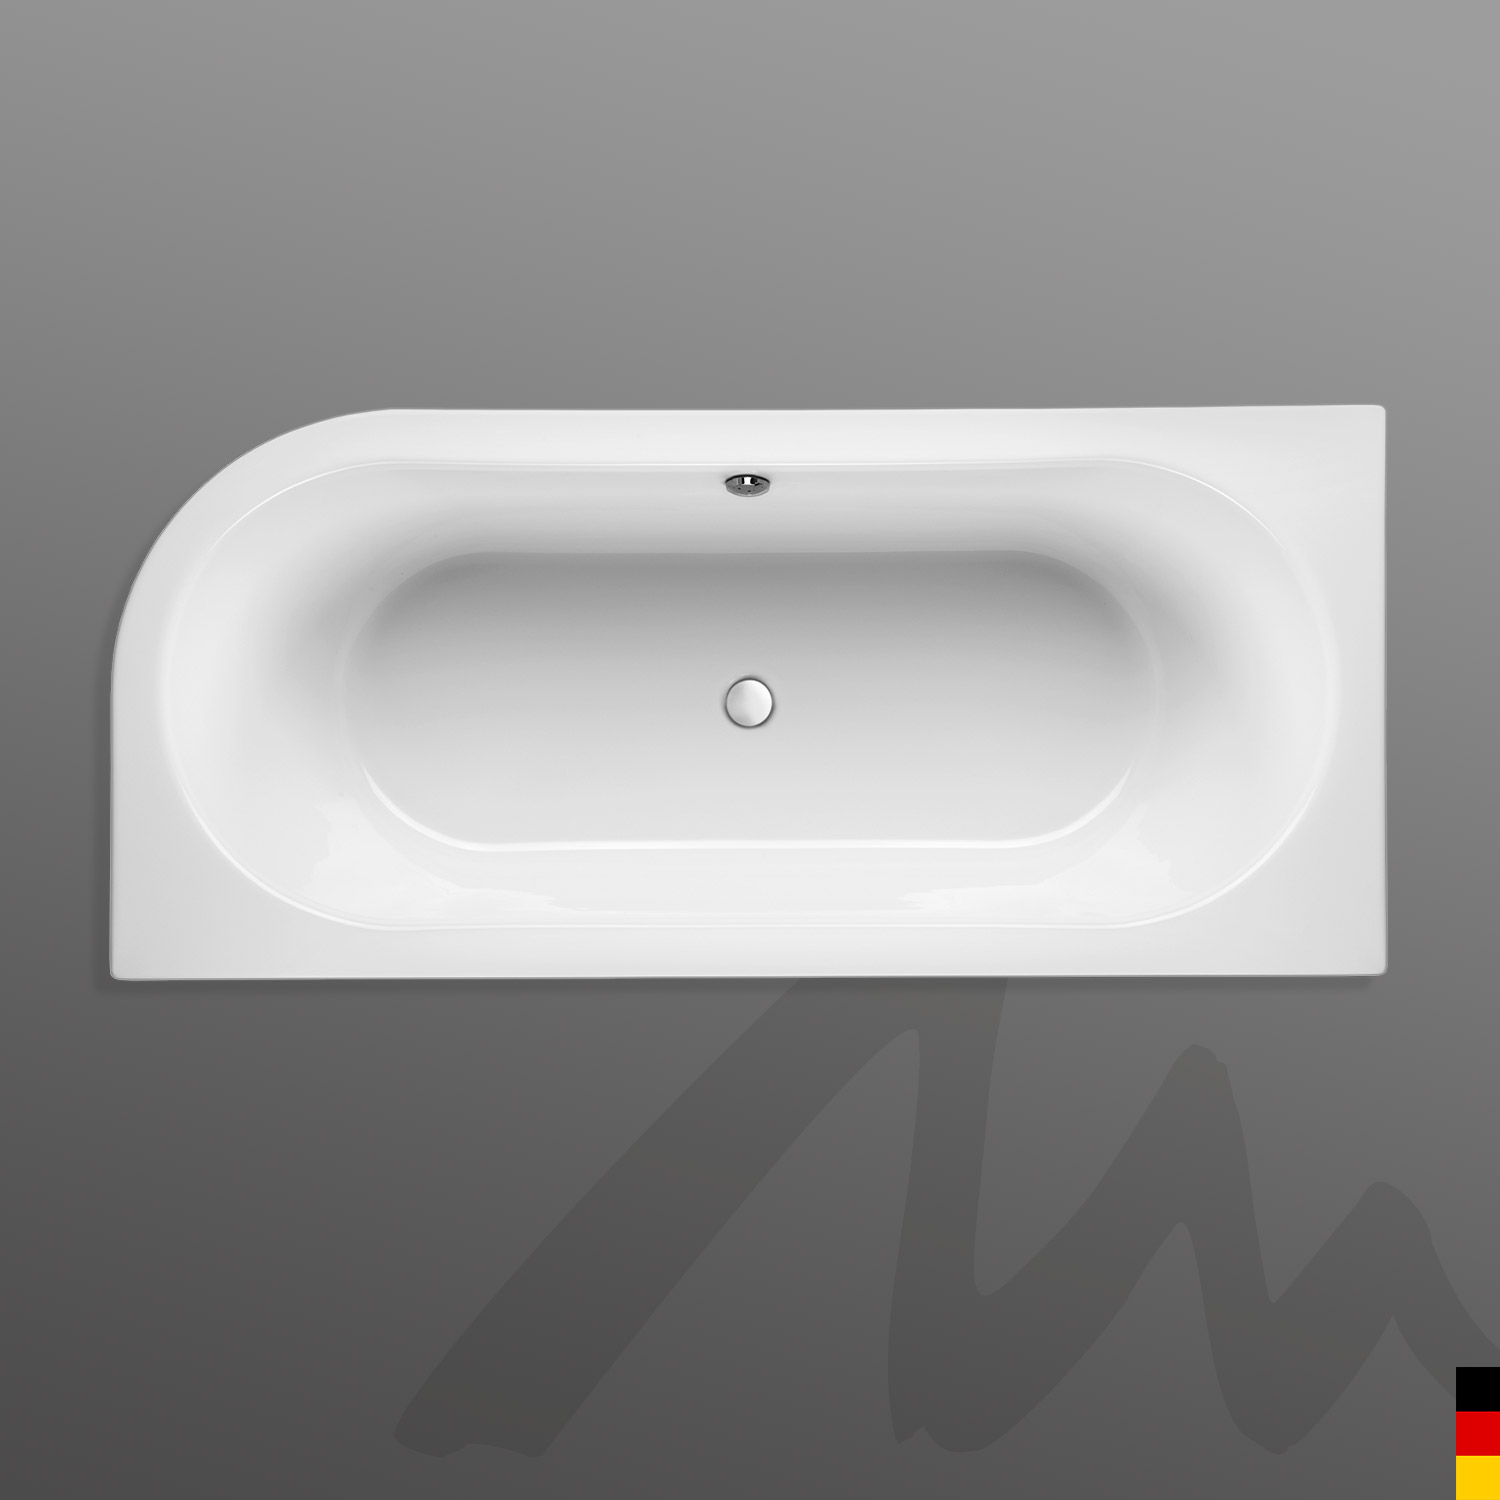 Mauersberger Badewanne Oval Primo 1 - 180/80 uno Ausführung links  180x80x45  Farbe: weiß